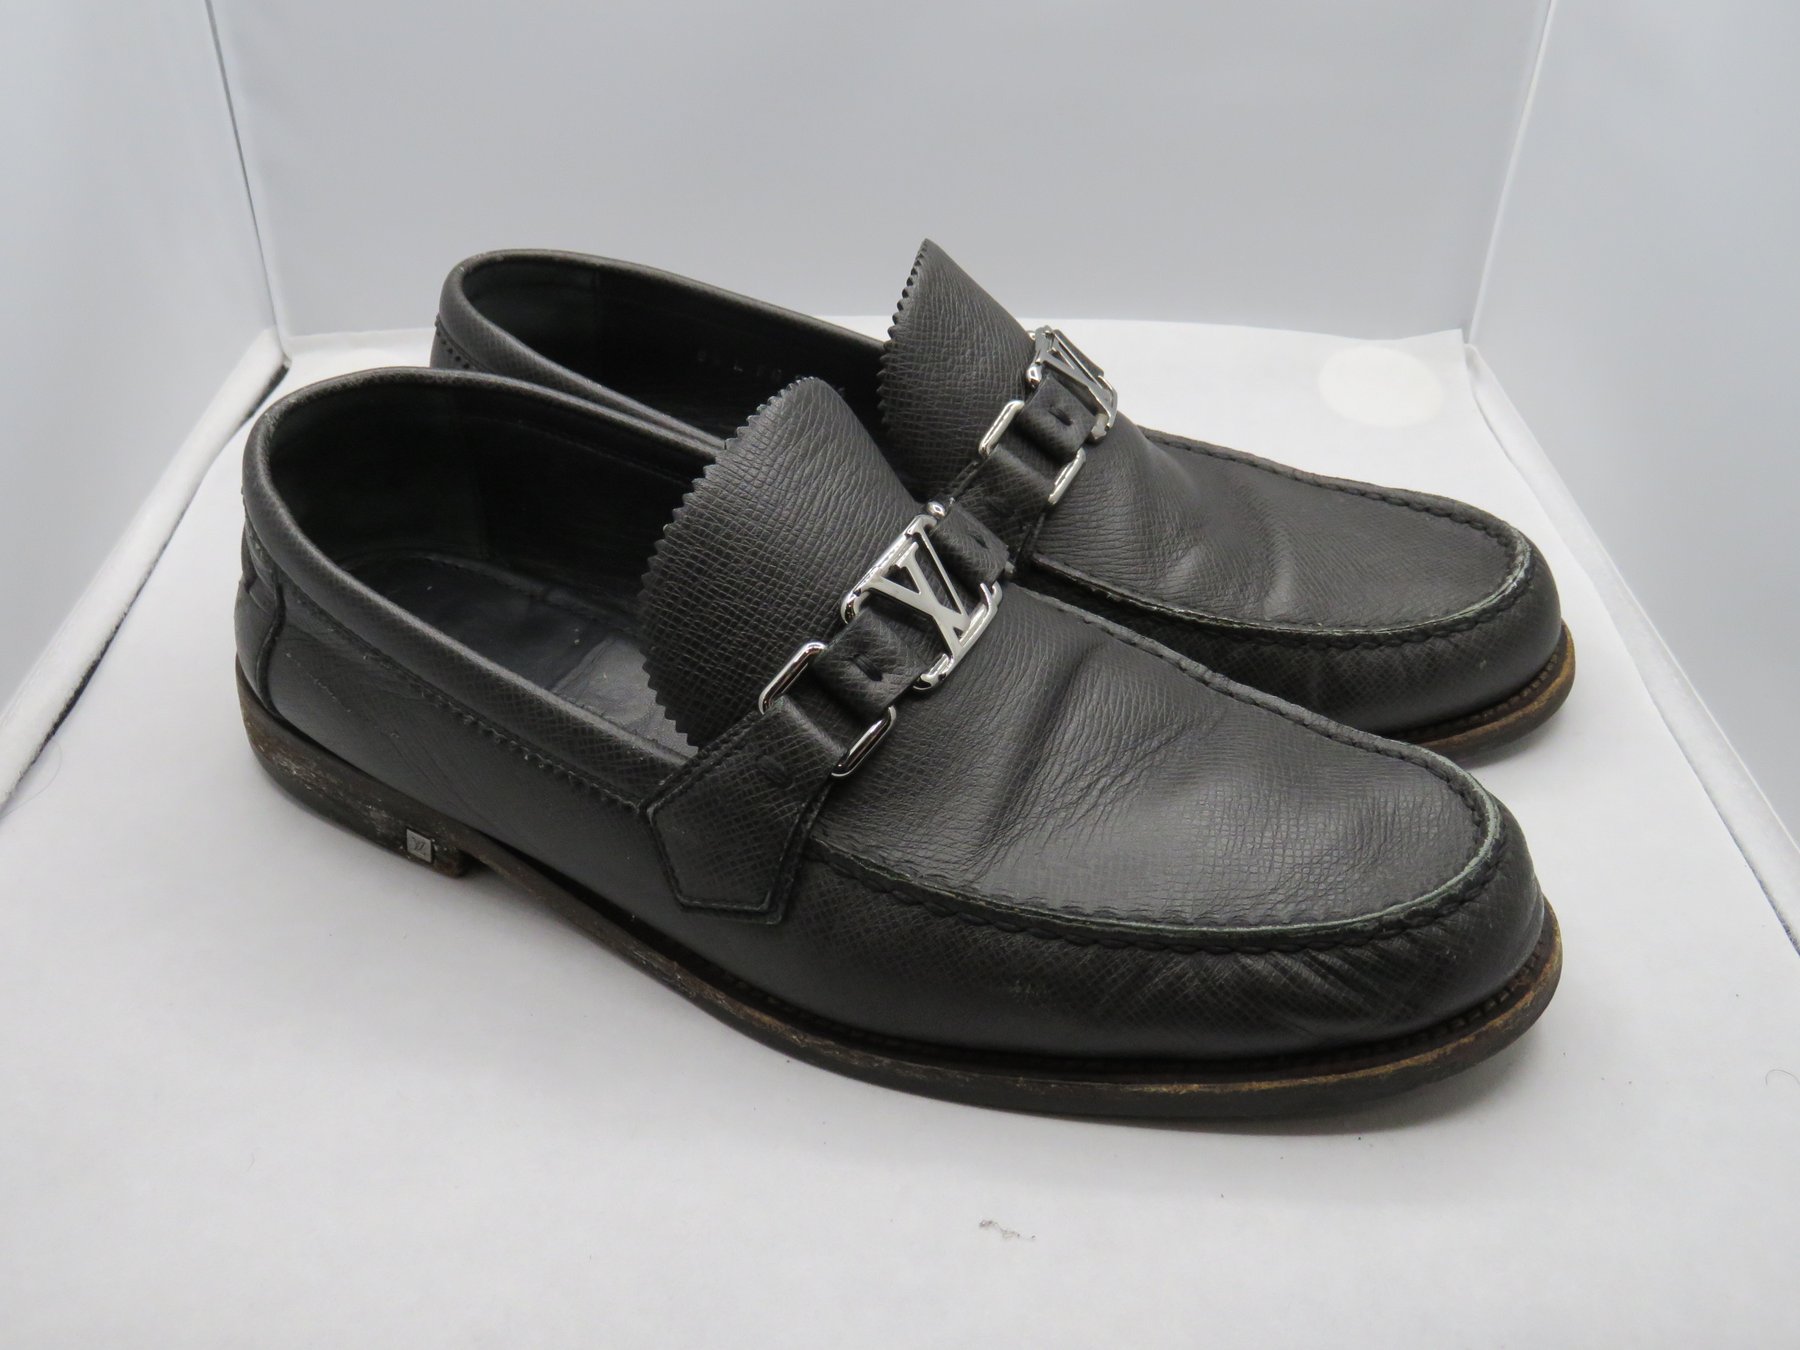 Louis Vuitton - Loafers - Size: Shoes / EU 43.5, UK 8,5 - Catawiki